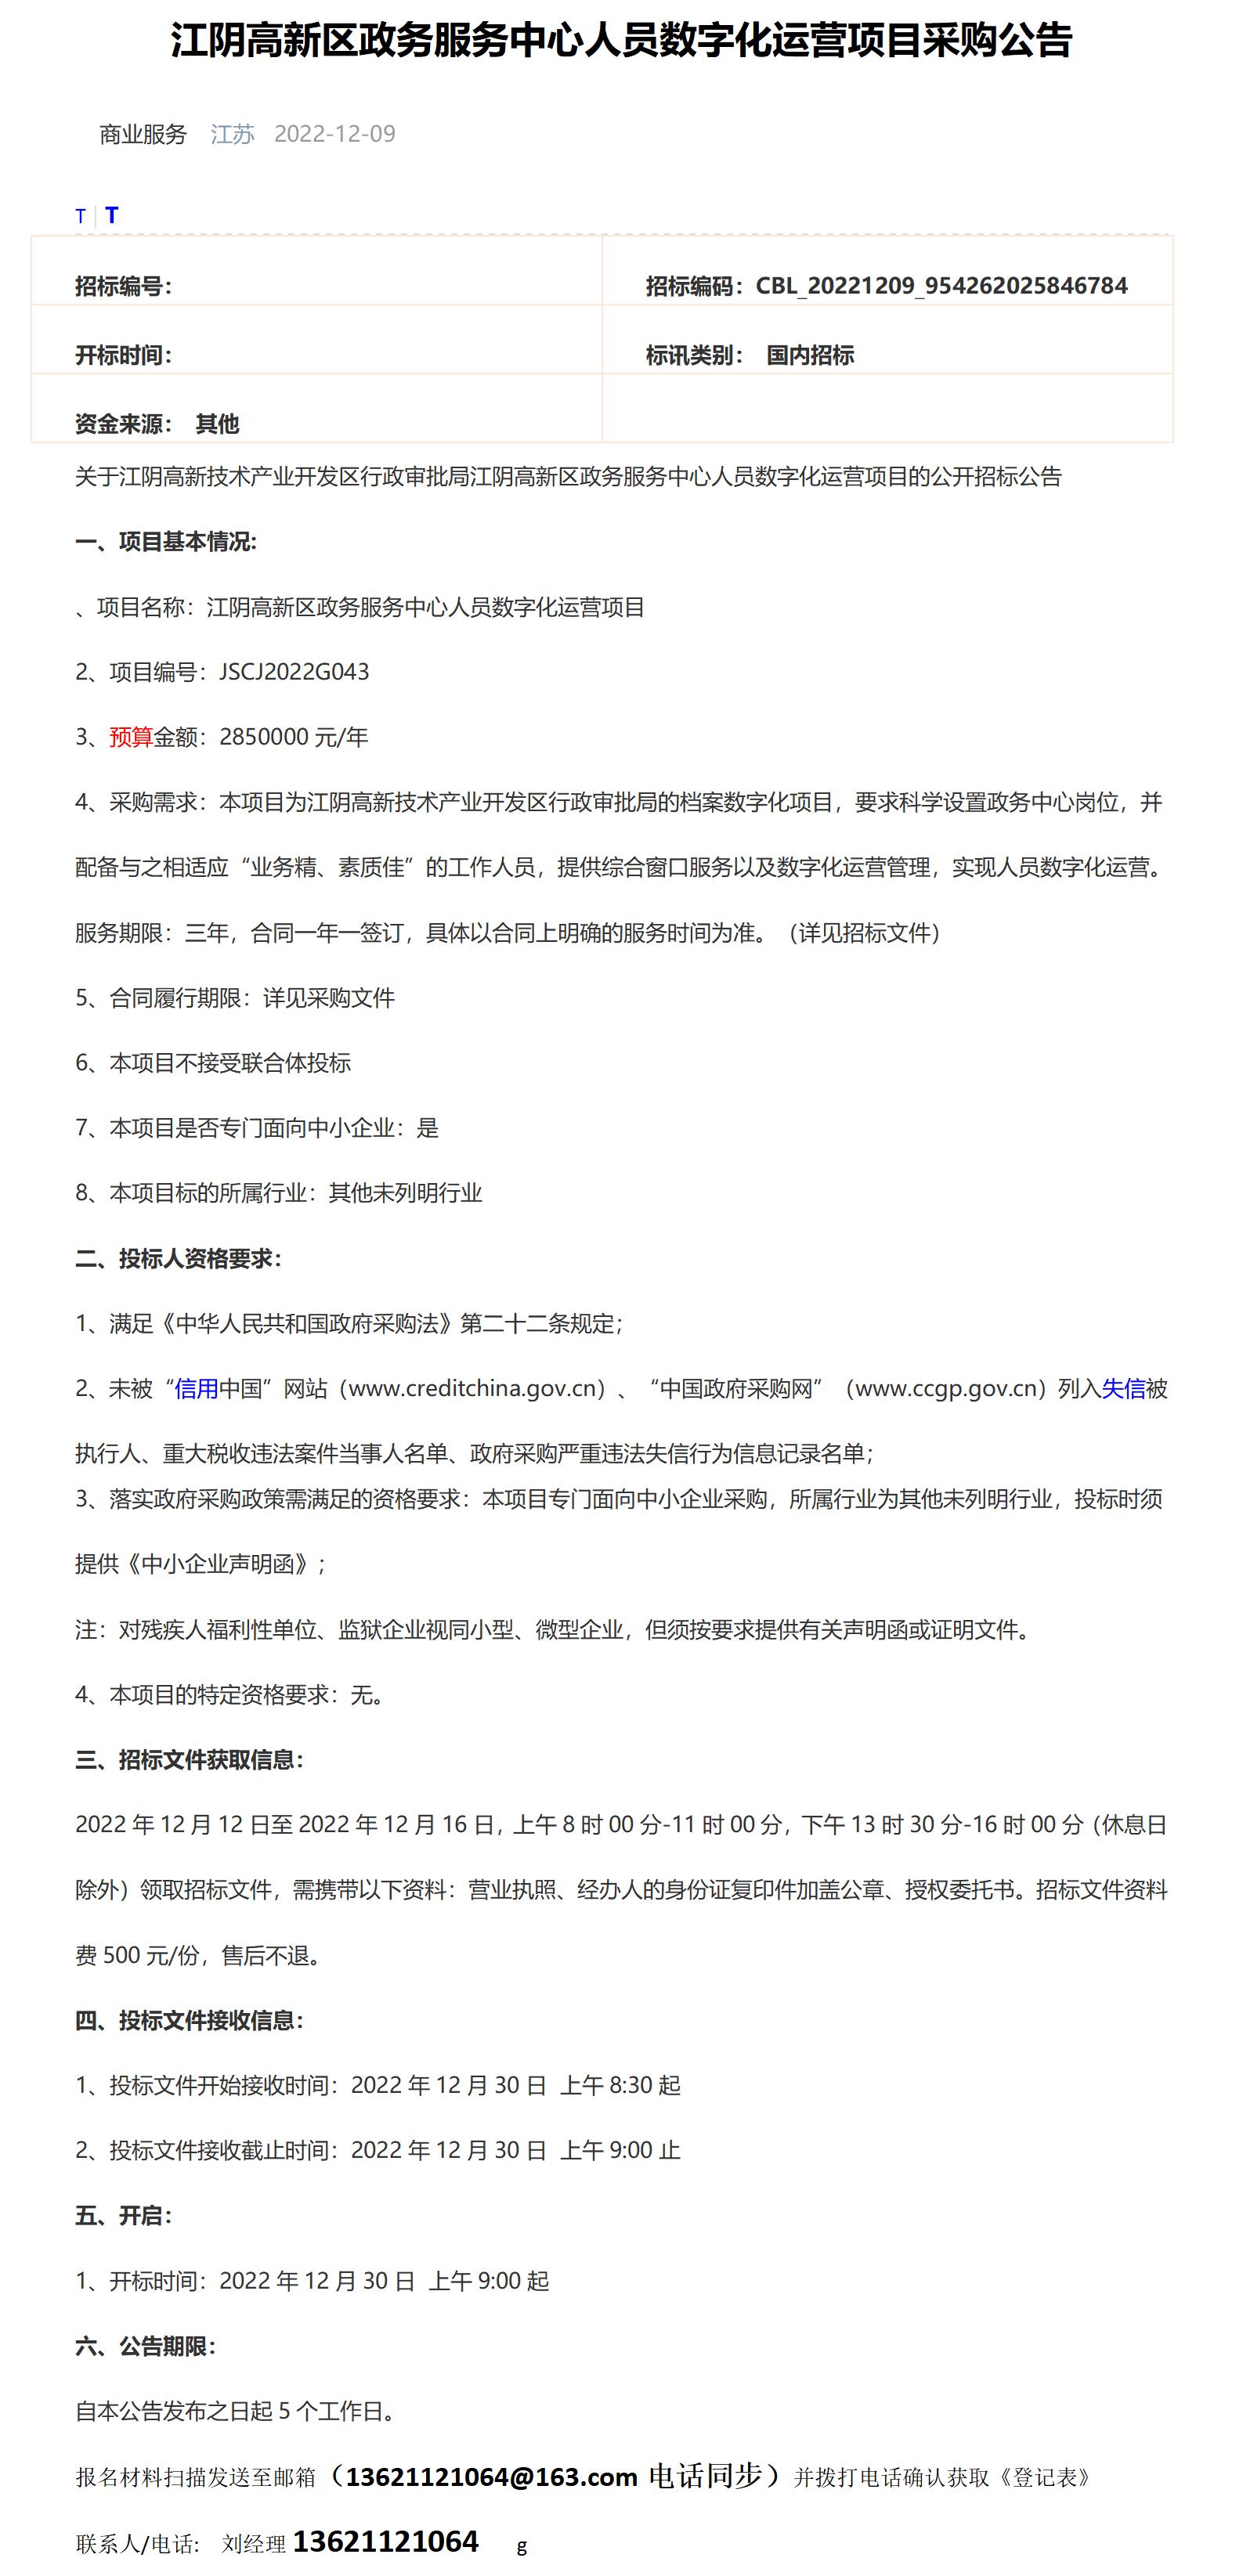 公告·江阴高新区政务服务中心人员数字化运营项目采购公告